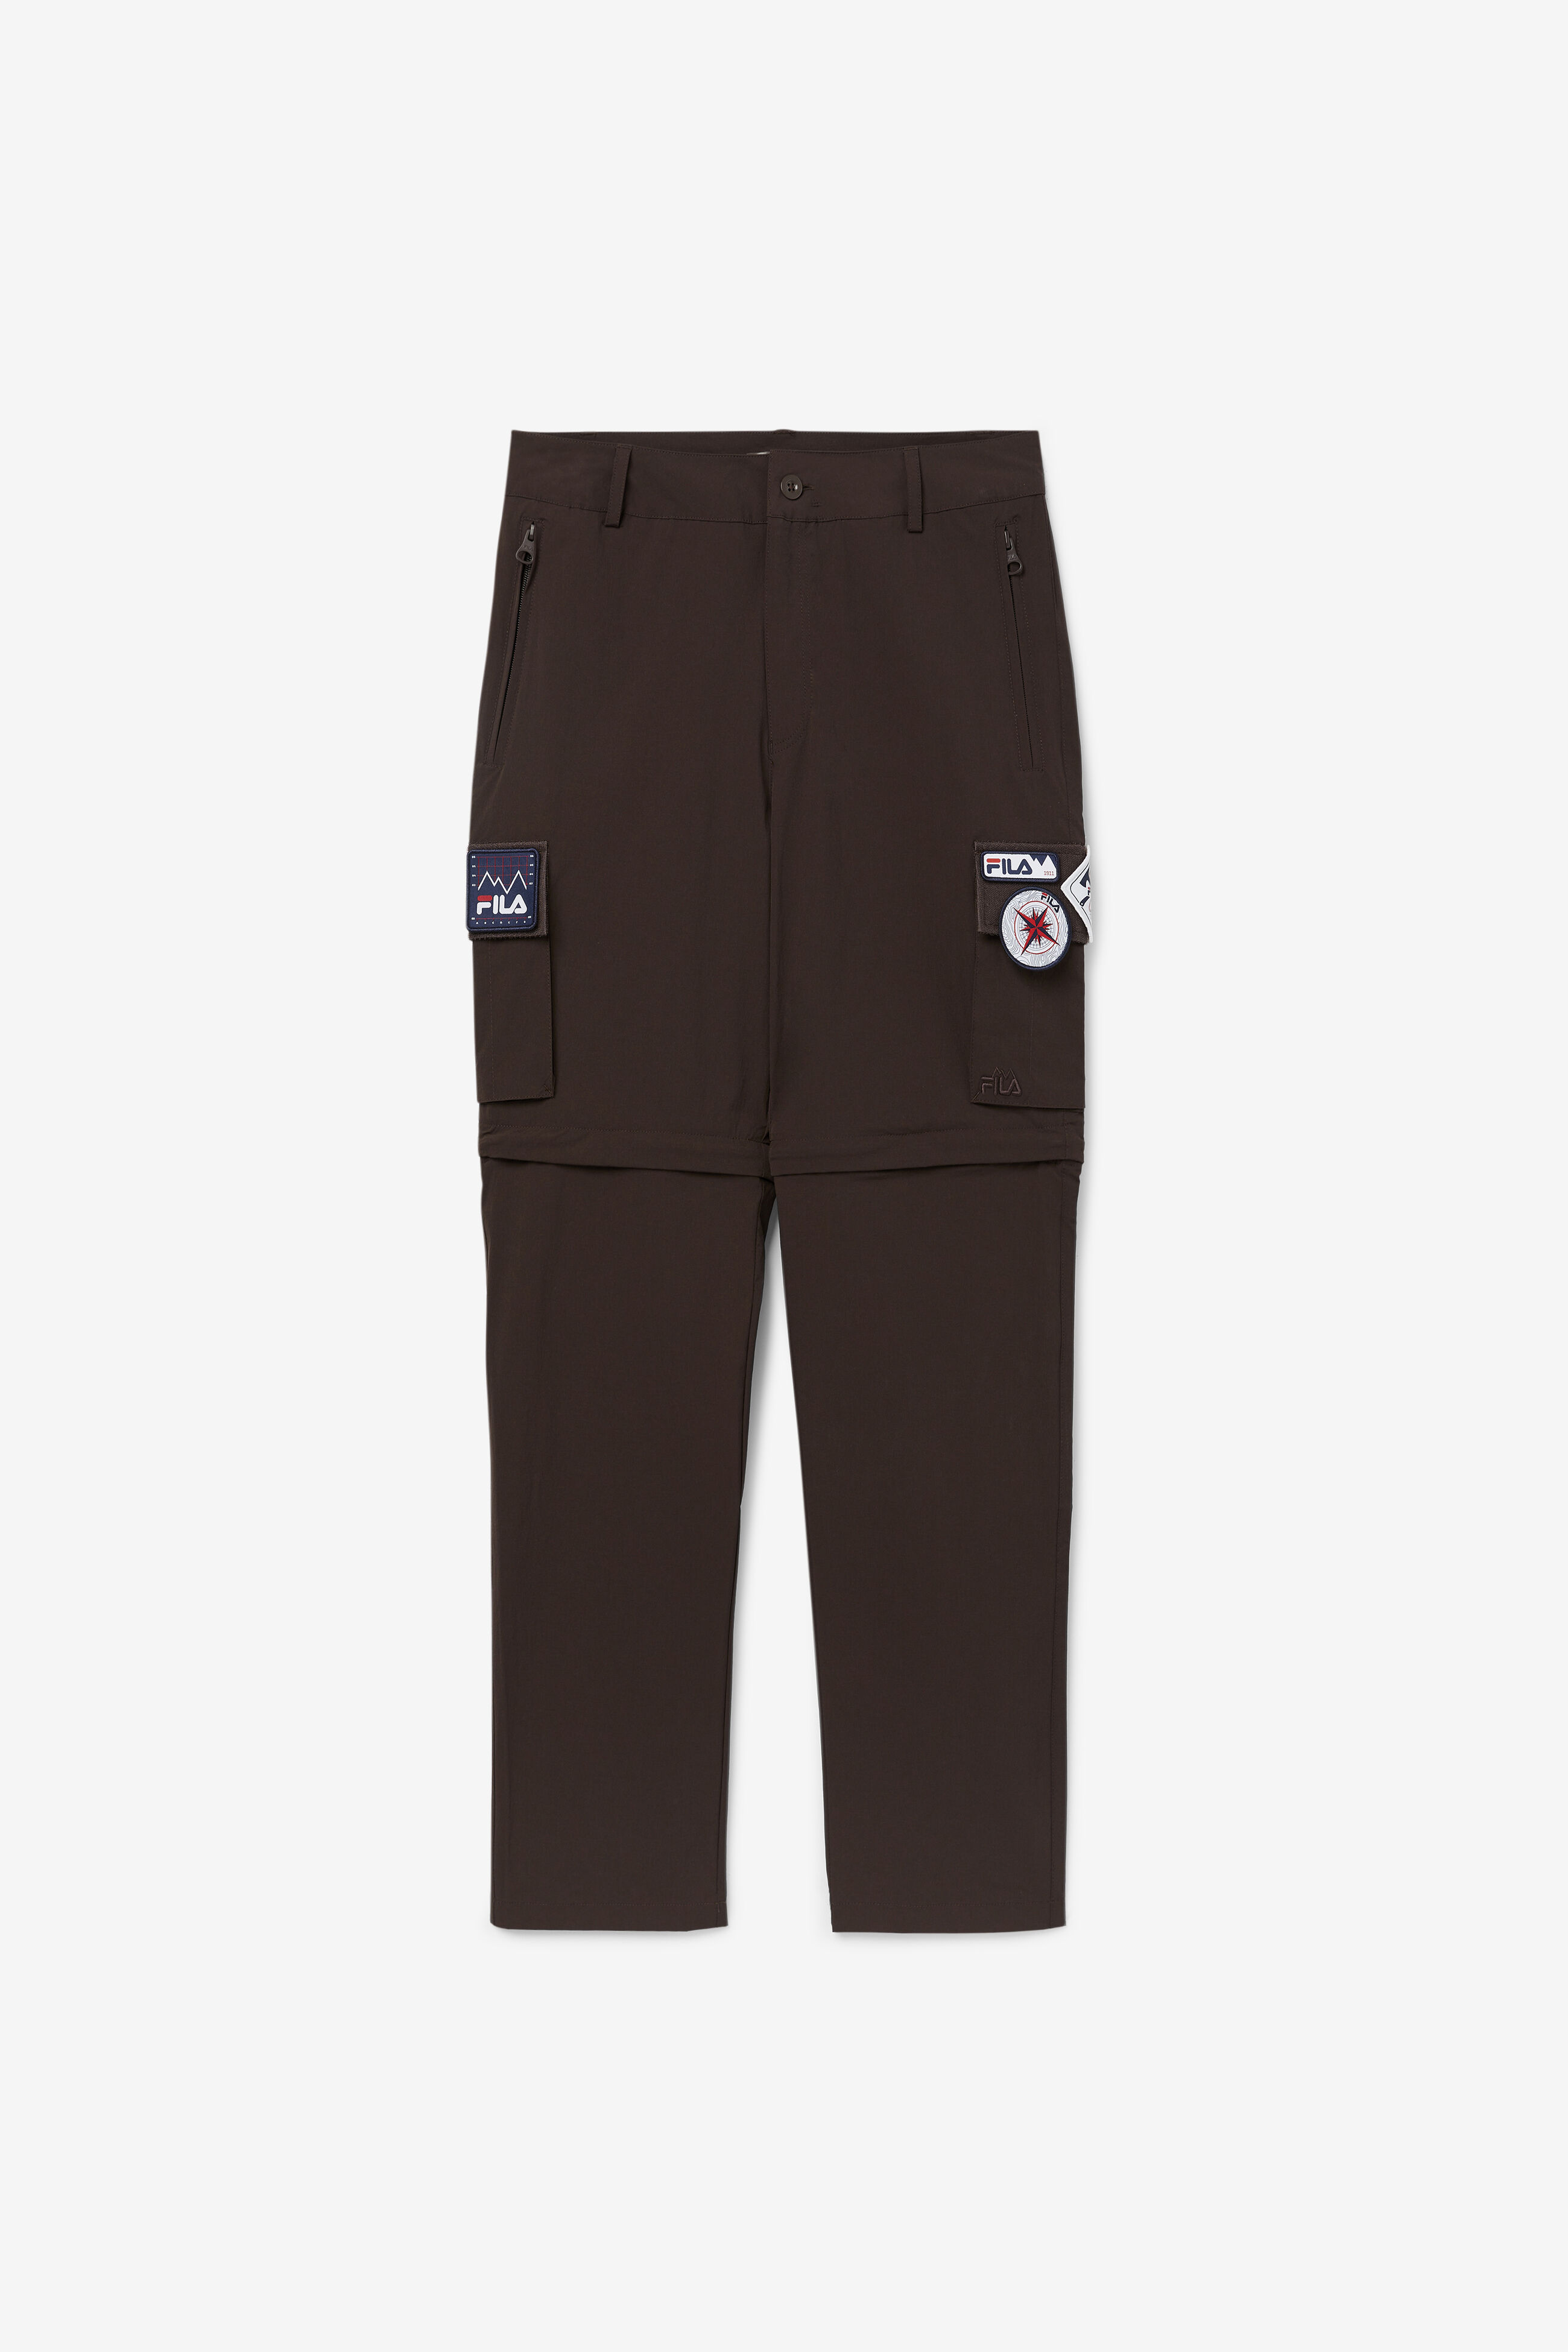 FILA Khaki Cargo Pants Waist Size 36